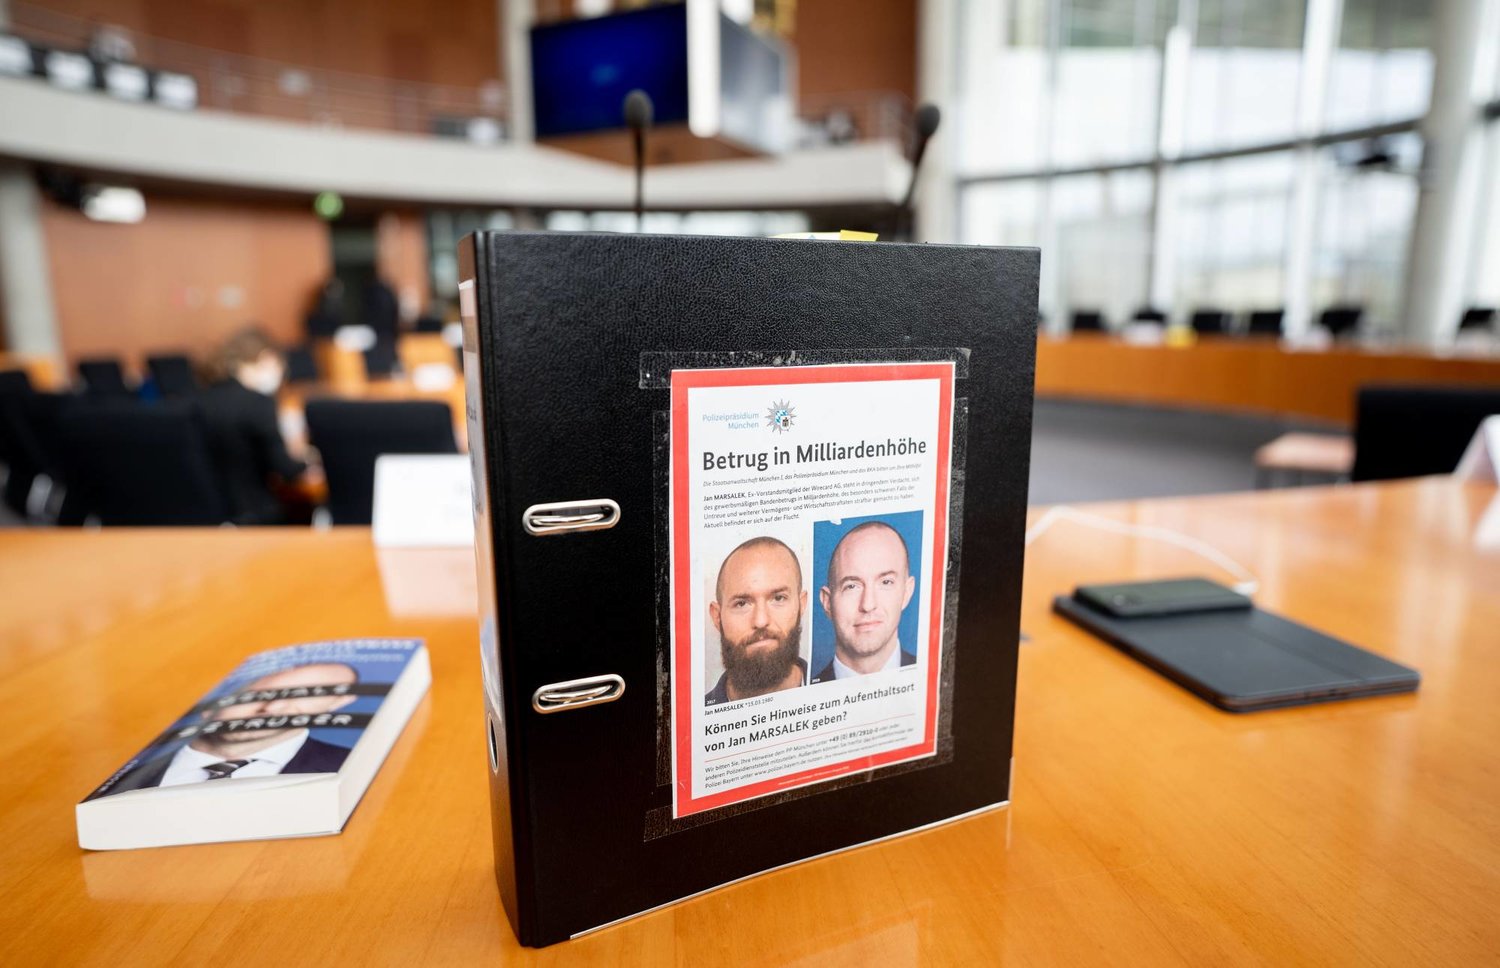 ملف يخص أحد أعضاء البرلمان الألماني (البوندستاغ) يحتوي على صورة وجه يان مارساليك المدير المالي السابق لشركة «وايركارد» الألمانية (د.ب.أ)